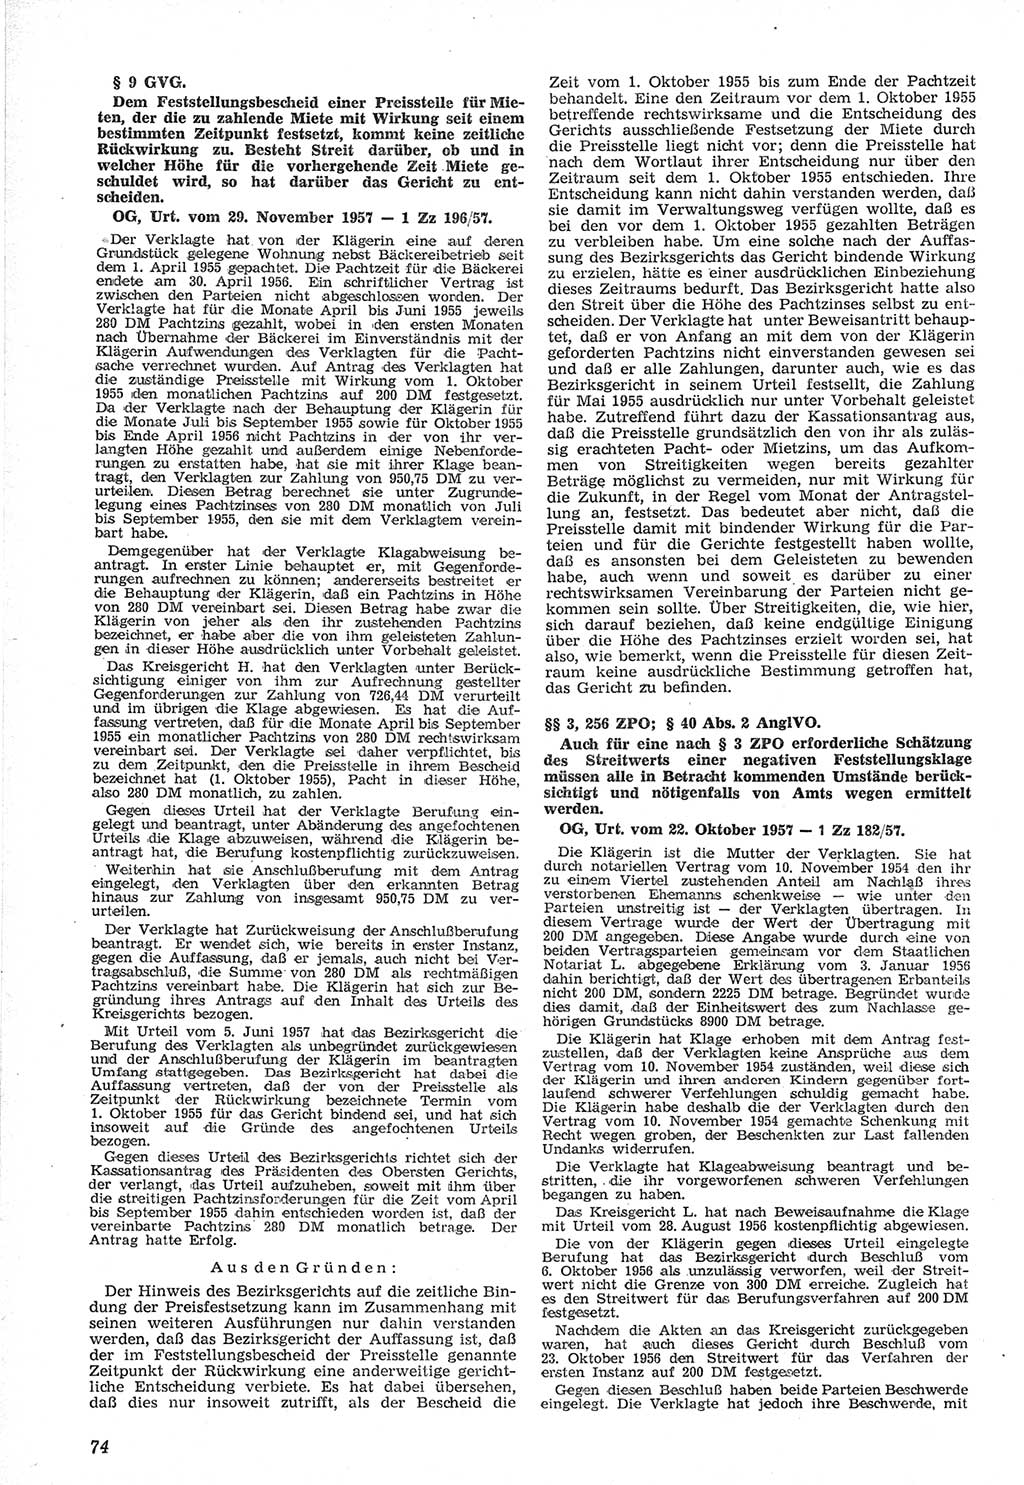 Neue Justiz (NJ), Zeitschrift für Recht und Rechtswissenschaft [Deutsche Demokratische Republik (DDR)], 12. Jahrgang 1958, Seite 74 (NJ DDR 1958, S. 74)